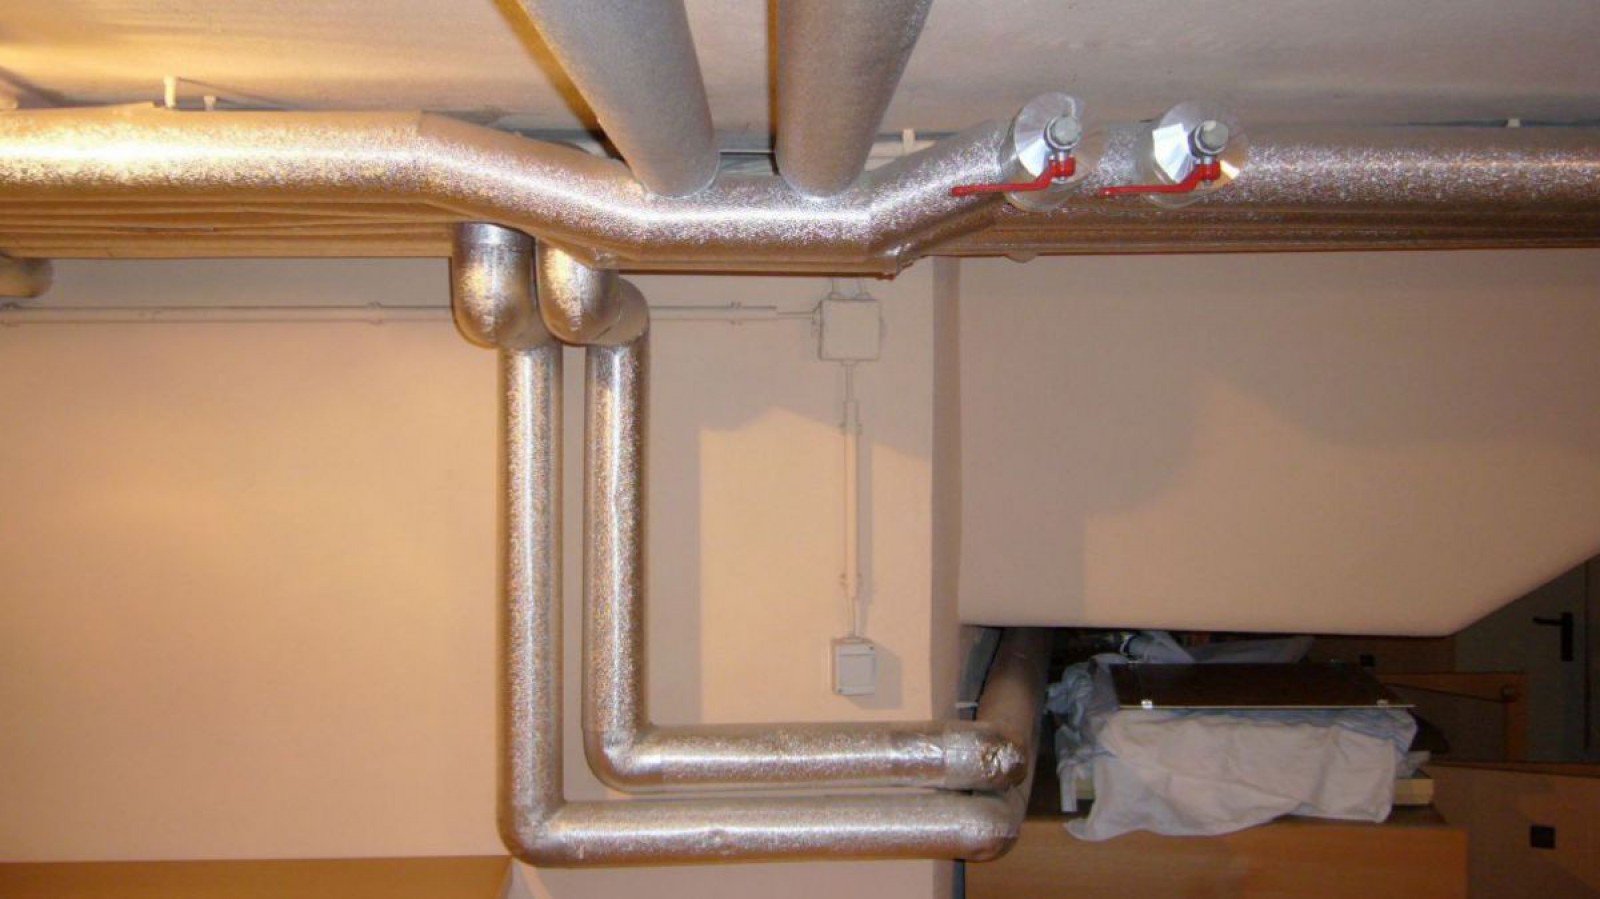 Gedämmte Heizungsrohre im Kellerbereich. Die Dämmung verhindert ungewünschte Wärmeverluste bei der Wärmeverteilung.